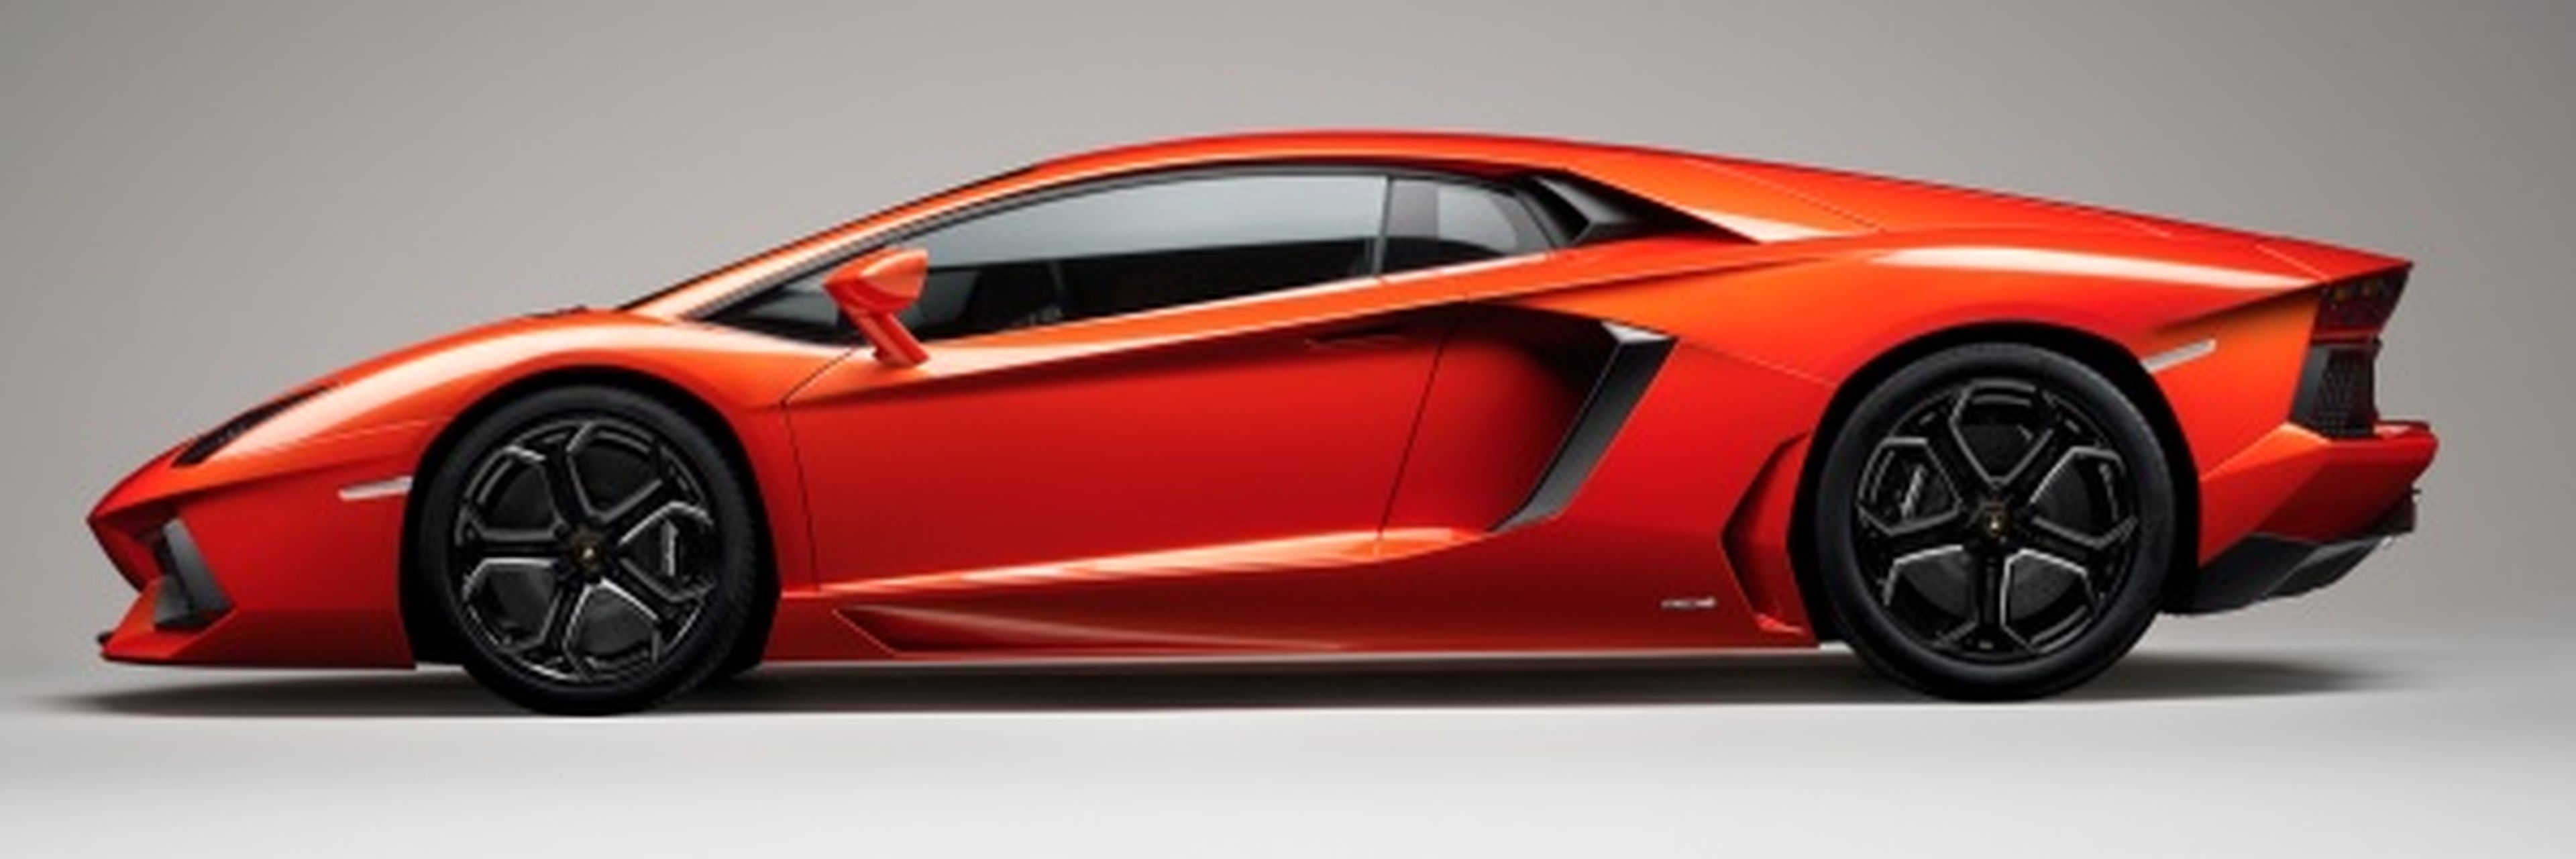 Lamborghini Aventador: Start-Stop y desactivación de cilindros